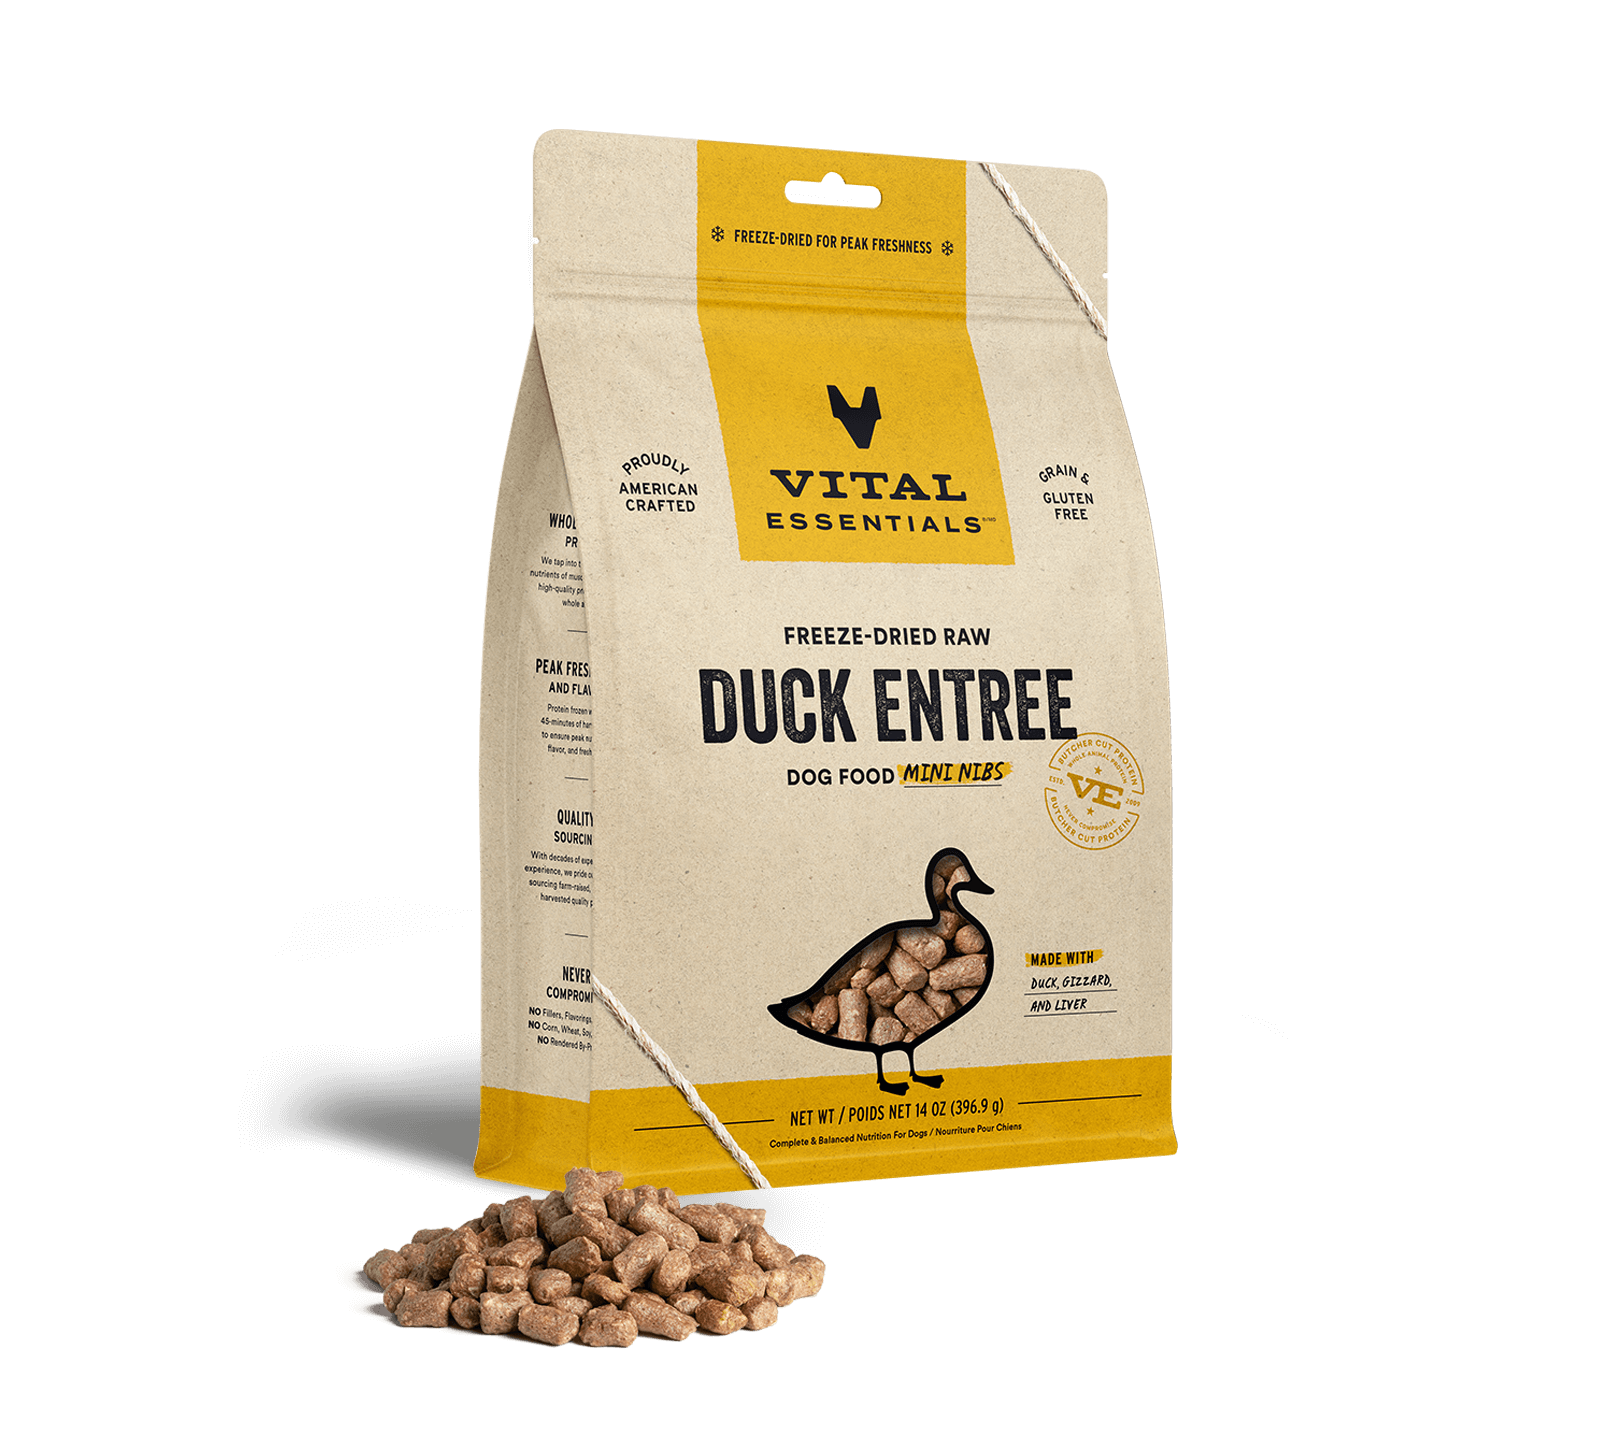 Vital Essentials Freeze-Dried Raw Duck Entree Dog Food Mini Nibs, 14 oz - Healing/First Aid